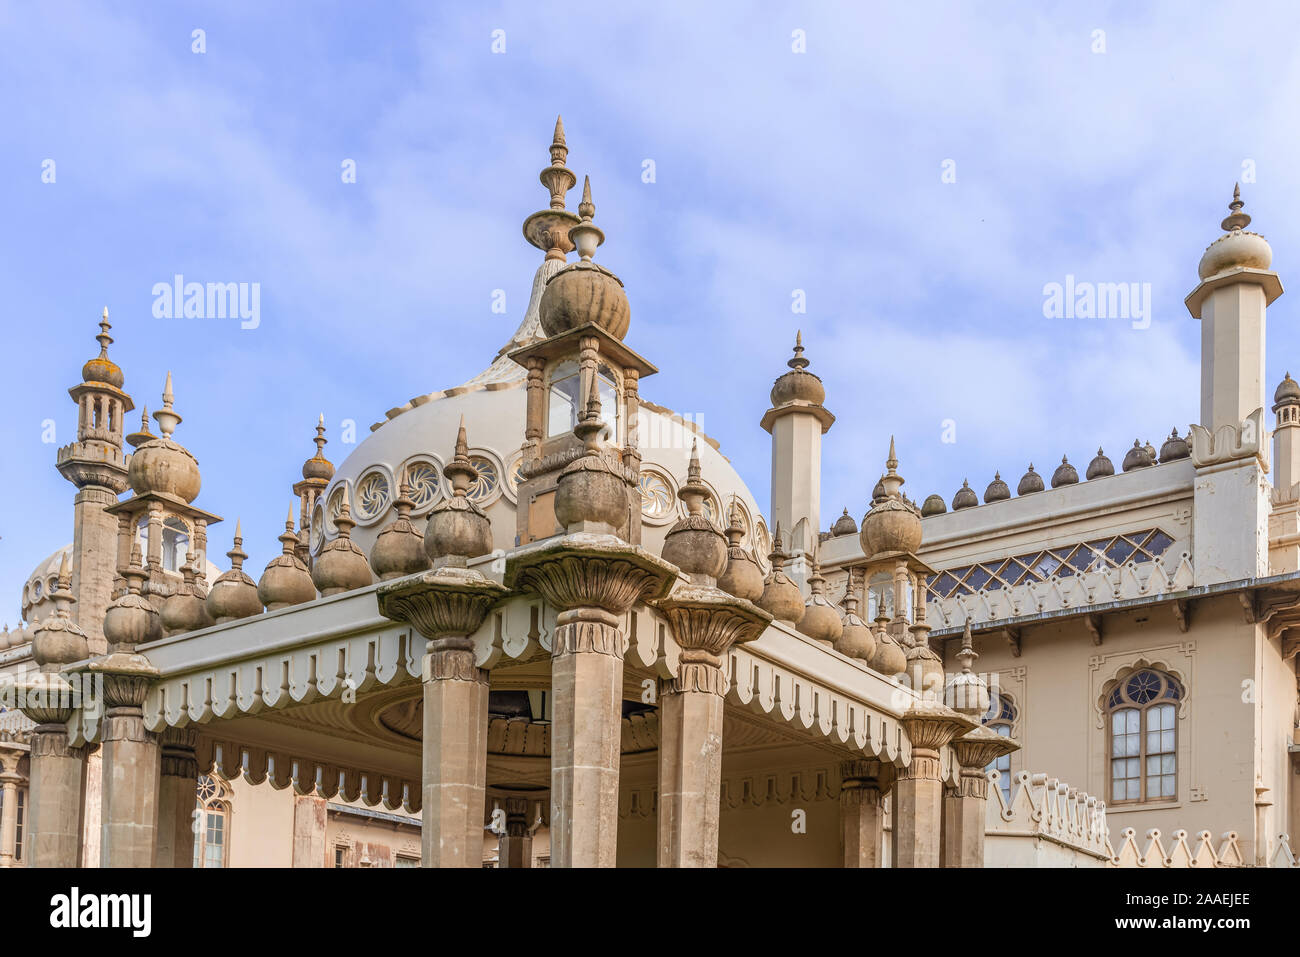 L'aspect arrière de la célèbre Royal Pavilion à Brighton. L'architecture de style indien sous un ciel bleu avec des nuages. Banque D'Images